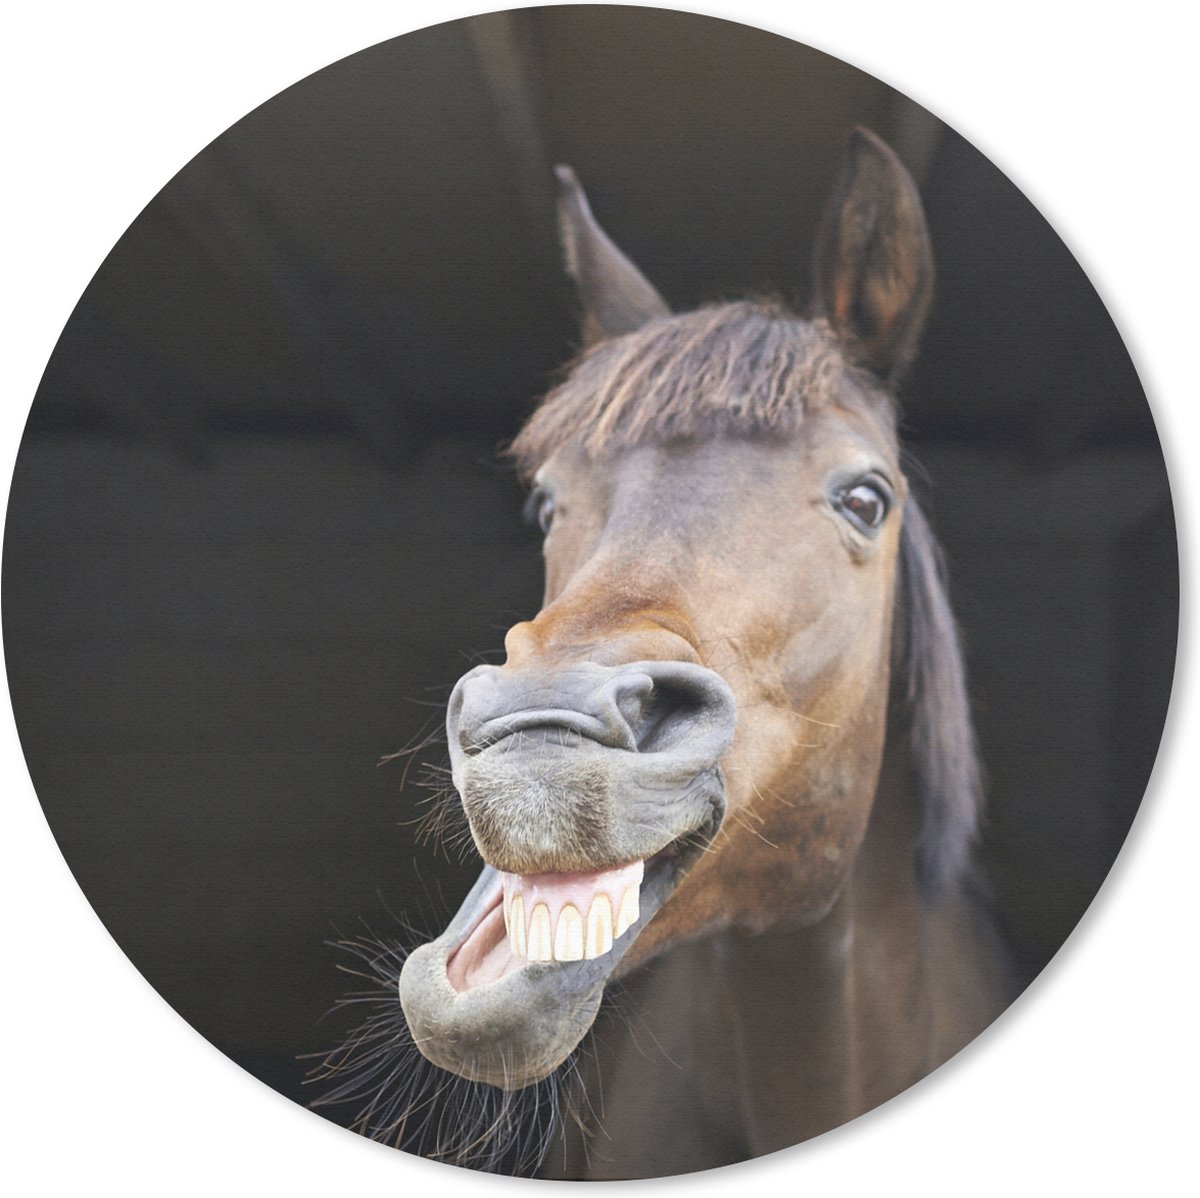 Muismat Grappige dieren - Paard met grappig gezicht Muismat rond - 20x20 cm - Muismat met foto